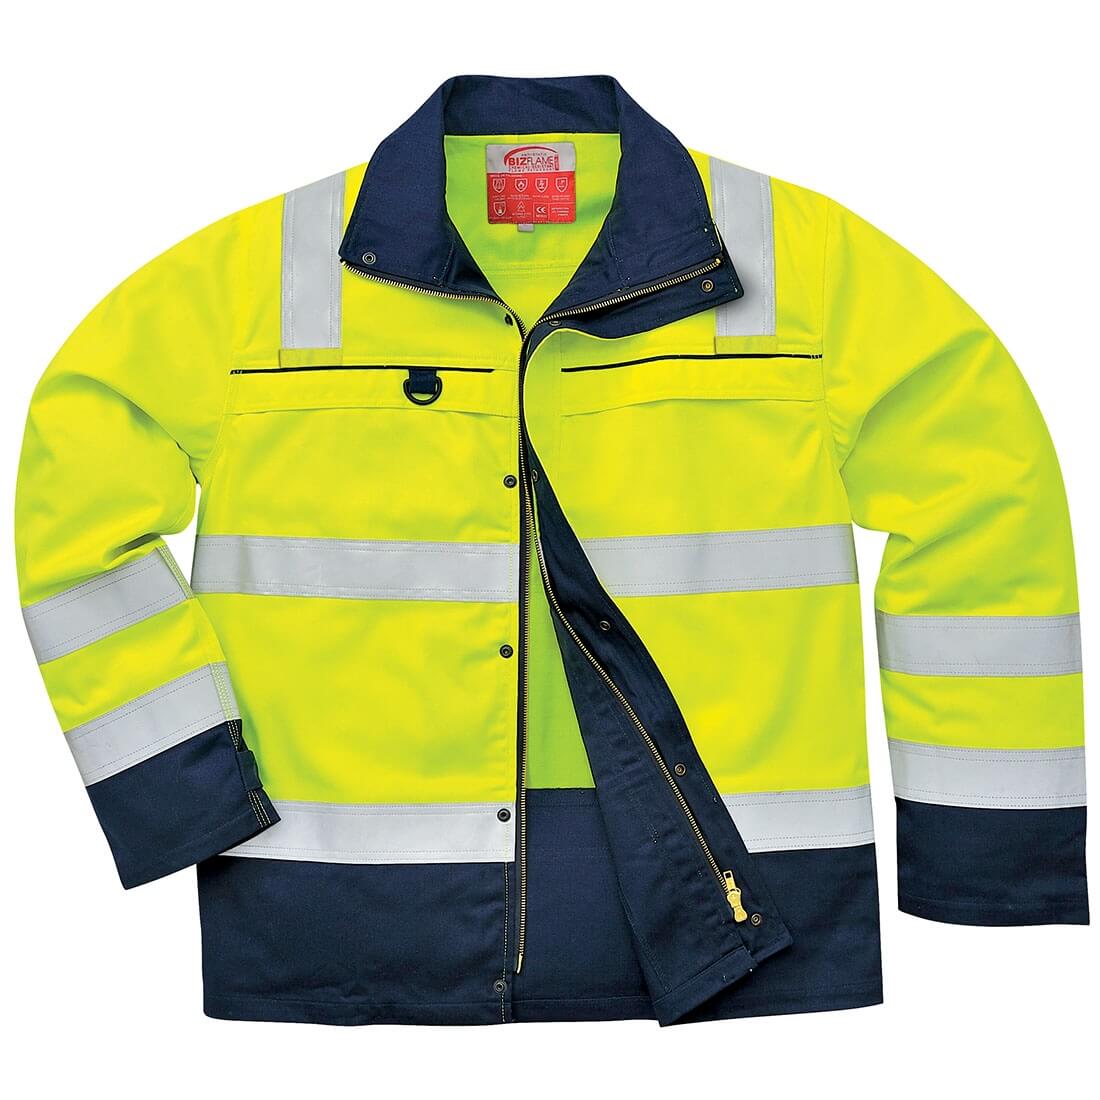 Multinorm-Warnschutz-Jacke - Arbeitskleidung